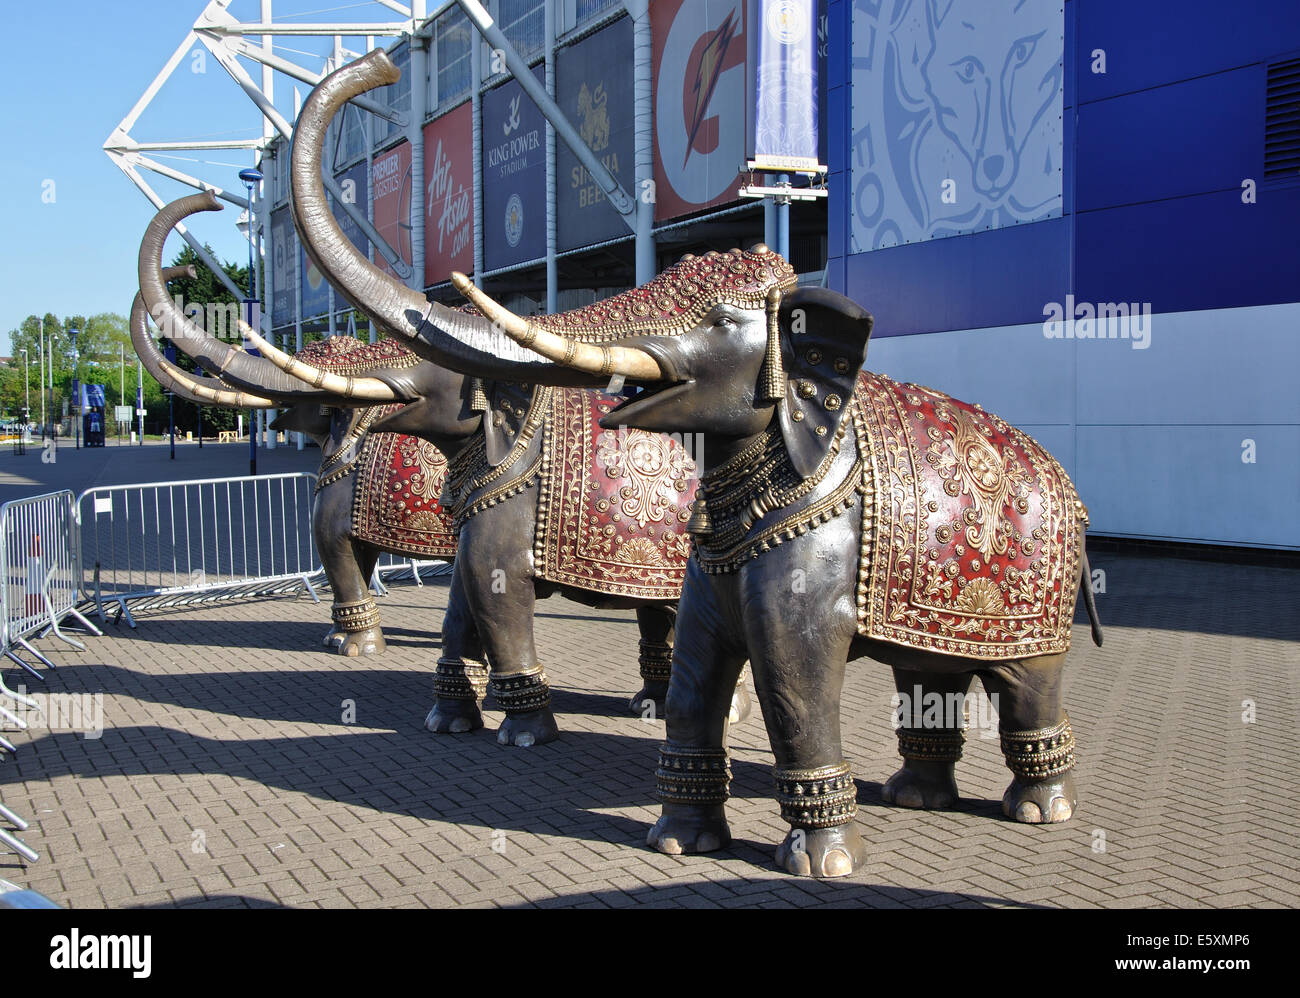 Les éléphants de promotion, la King Power Stadium, le Club de football de Leicester, Leicester, England, UK Banque D'Images